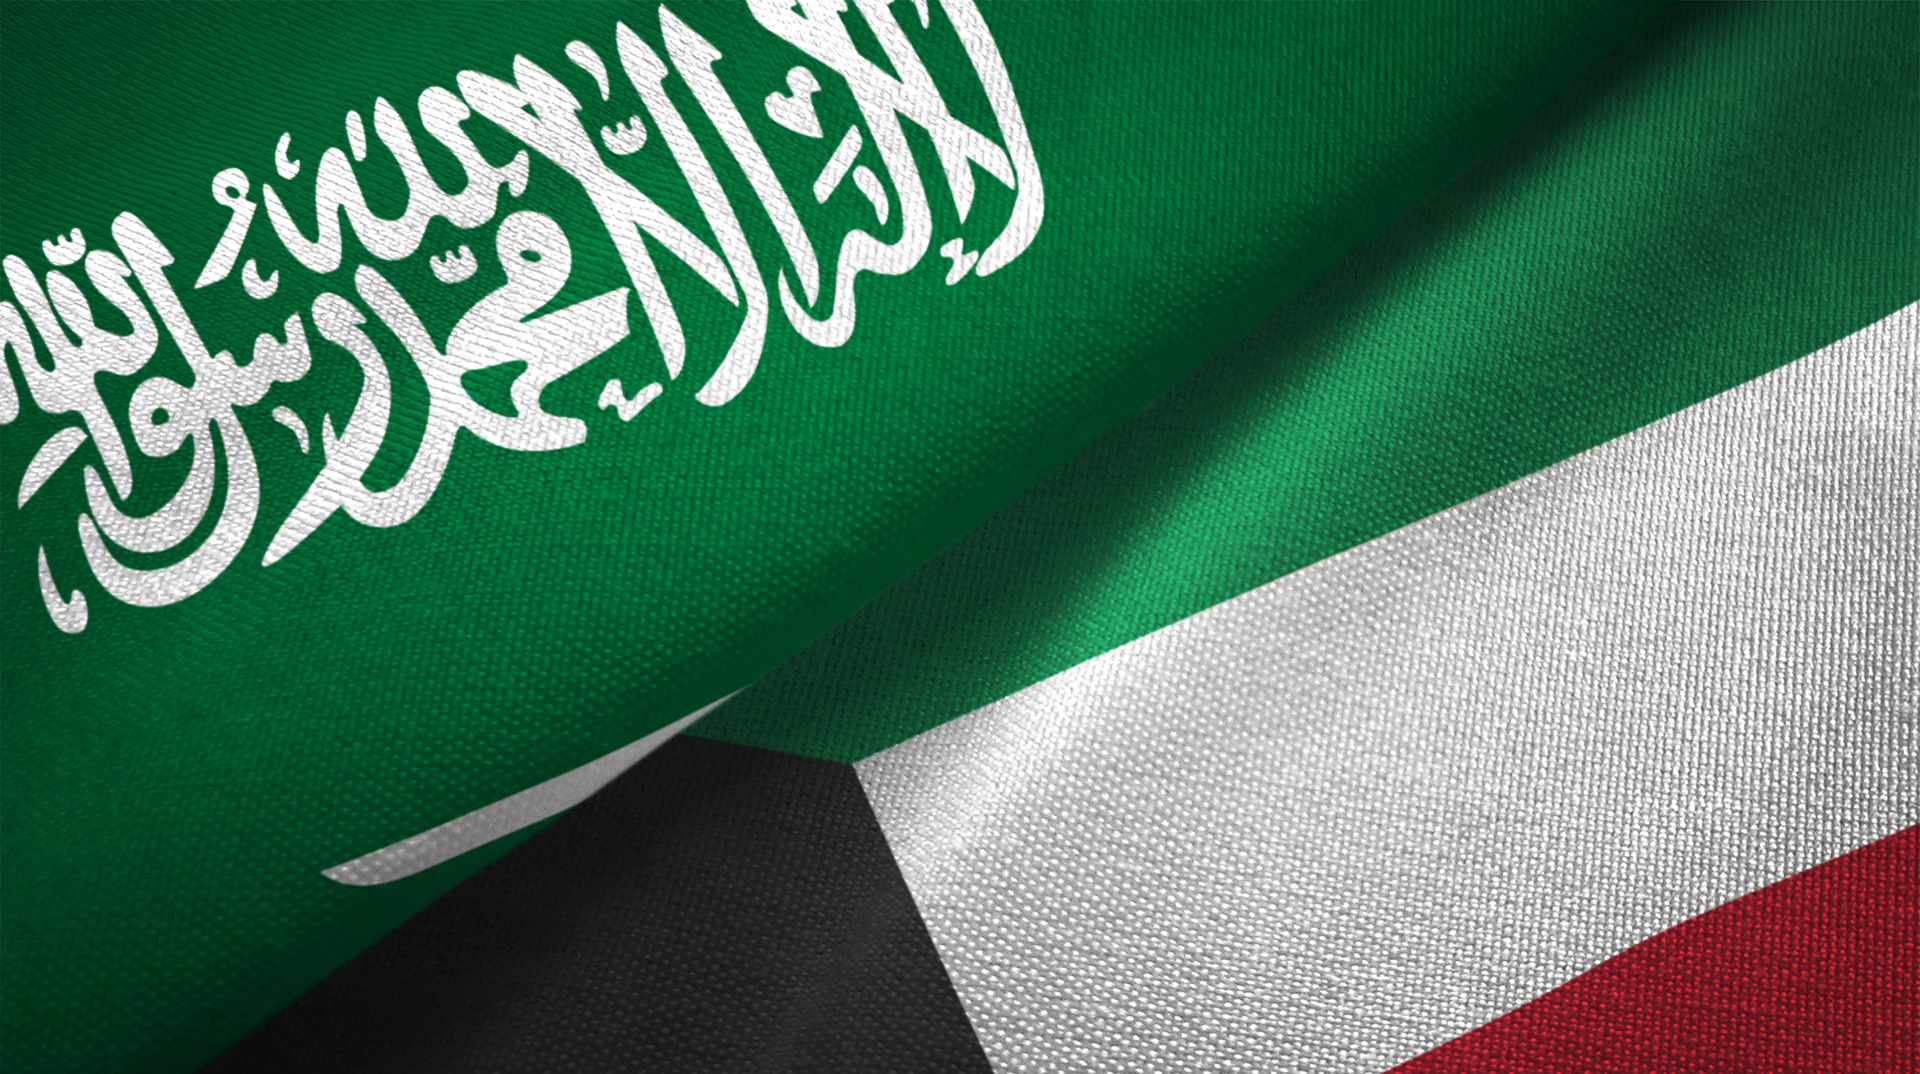 اللجنة المشتركة الدائمة الكويتية السعودية تبحث تسريع مشاريع المنطقة المقسومة